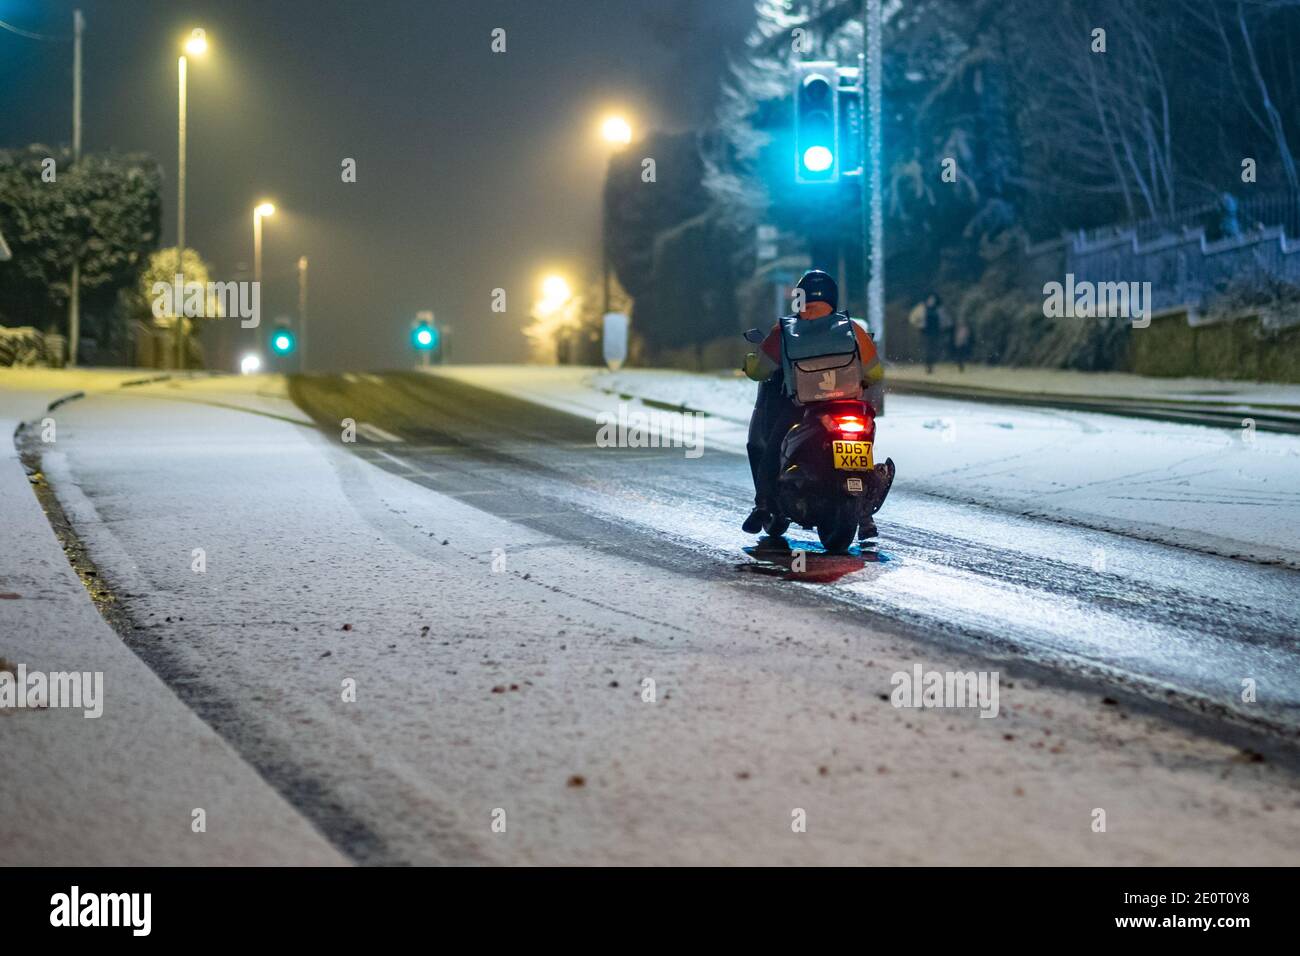 Cradley Heath, West Midlands, Großbritannien. Januar 2020. Ein Fastfood-Fahrer trotzt dem Schnee auf Straßen in Cradley Heath, West Midlands, die sich gut in Eis verwandeln können, da die Temperaturen über Nacht auf minus 3 Grad sinken. Kredit: Peter Lopeman/Alamy Live Nachrichten Stockfoto